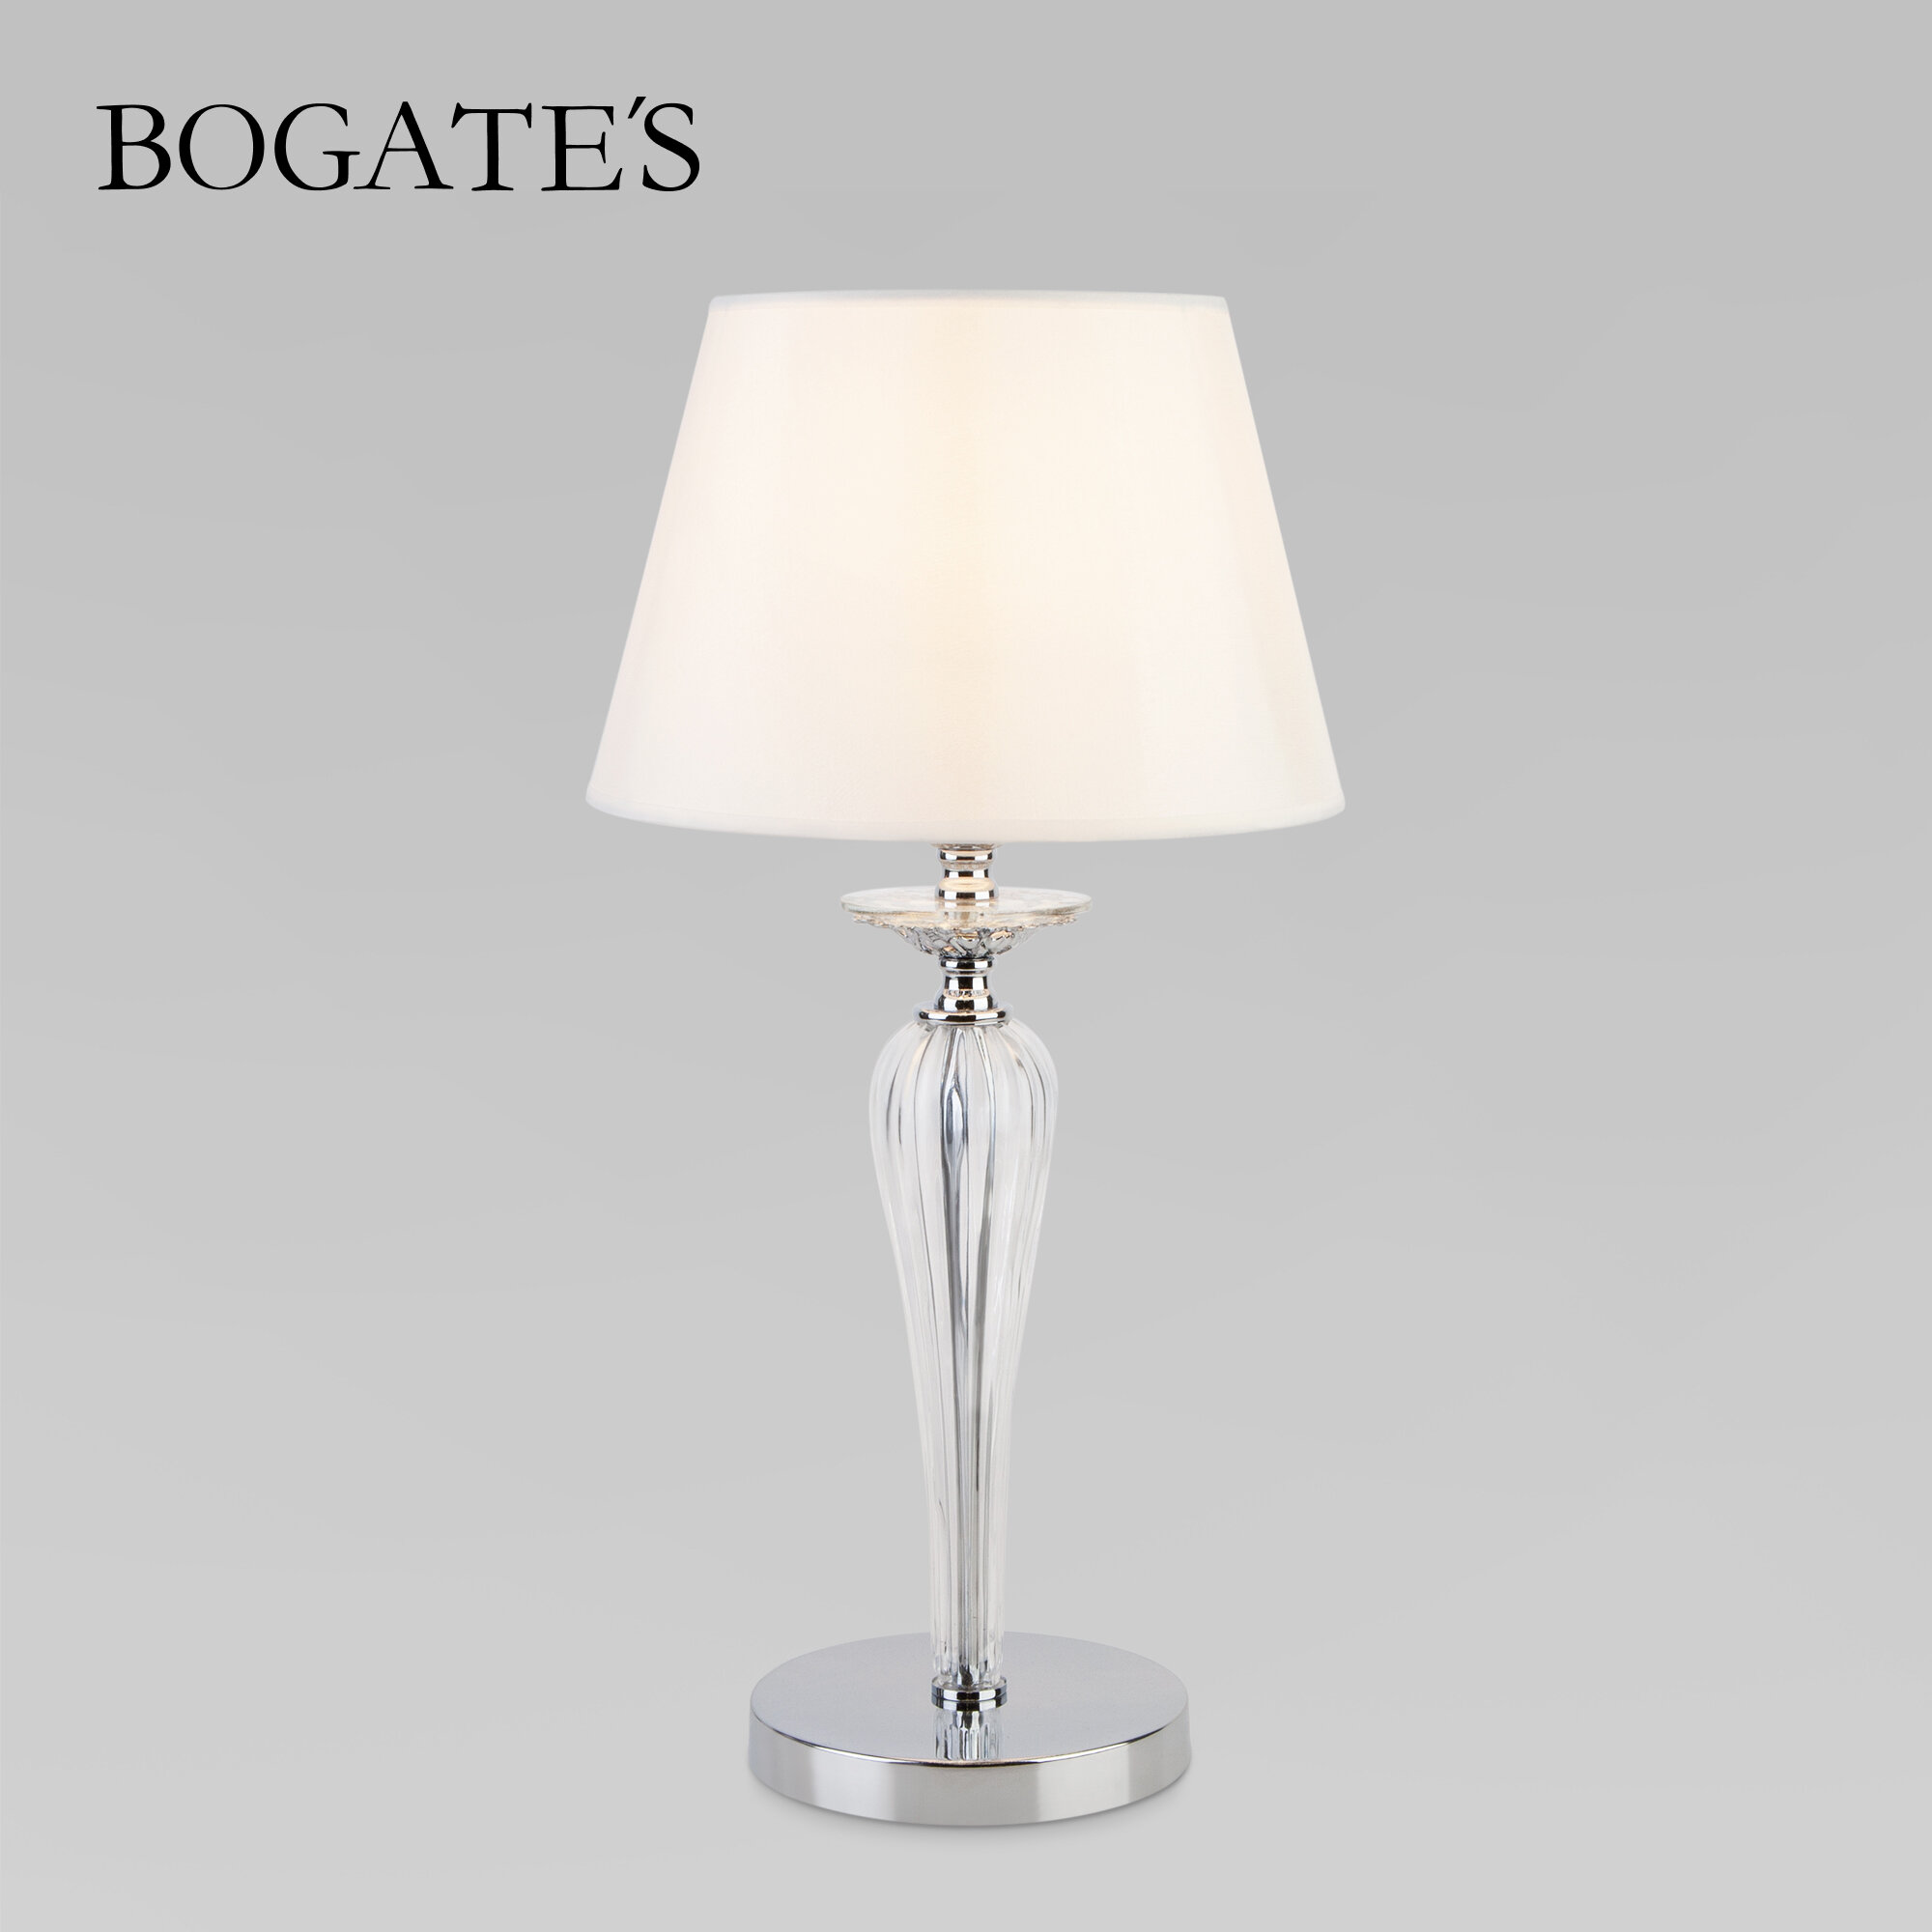 Настольный светильник классический Bogate's Olenna 01104/1 белый